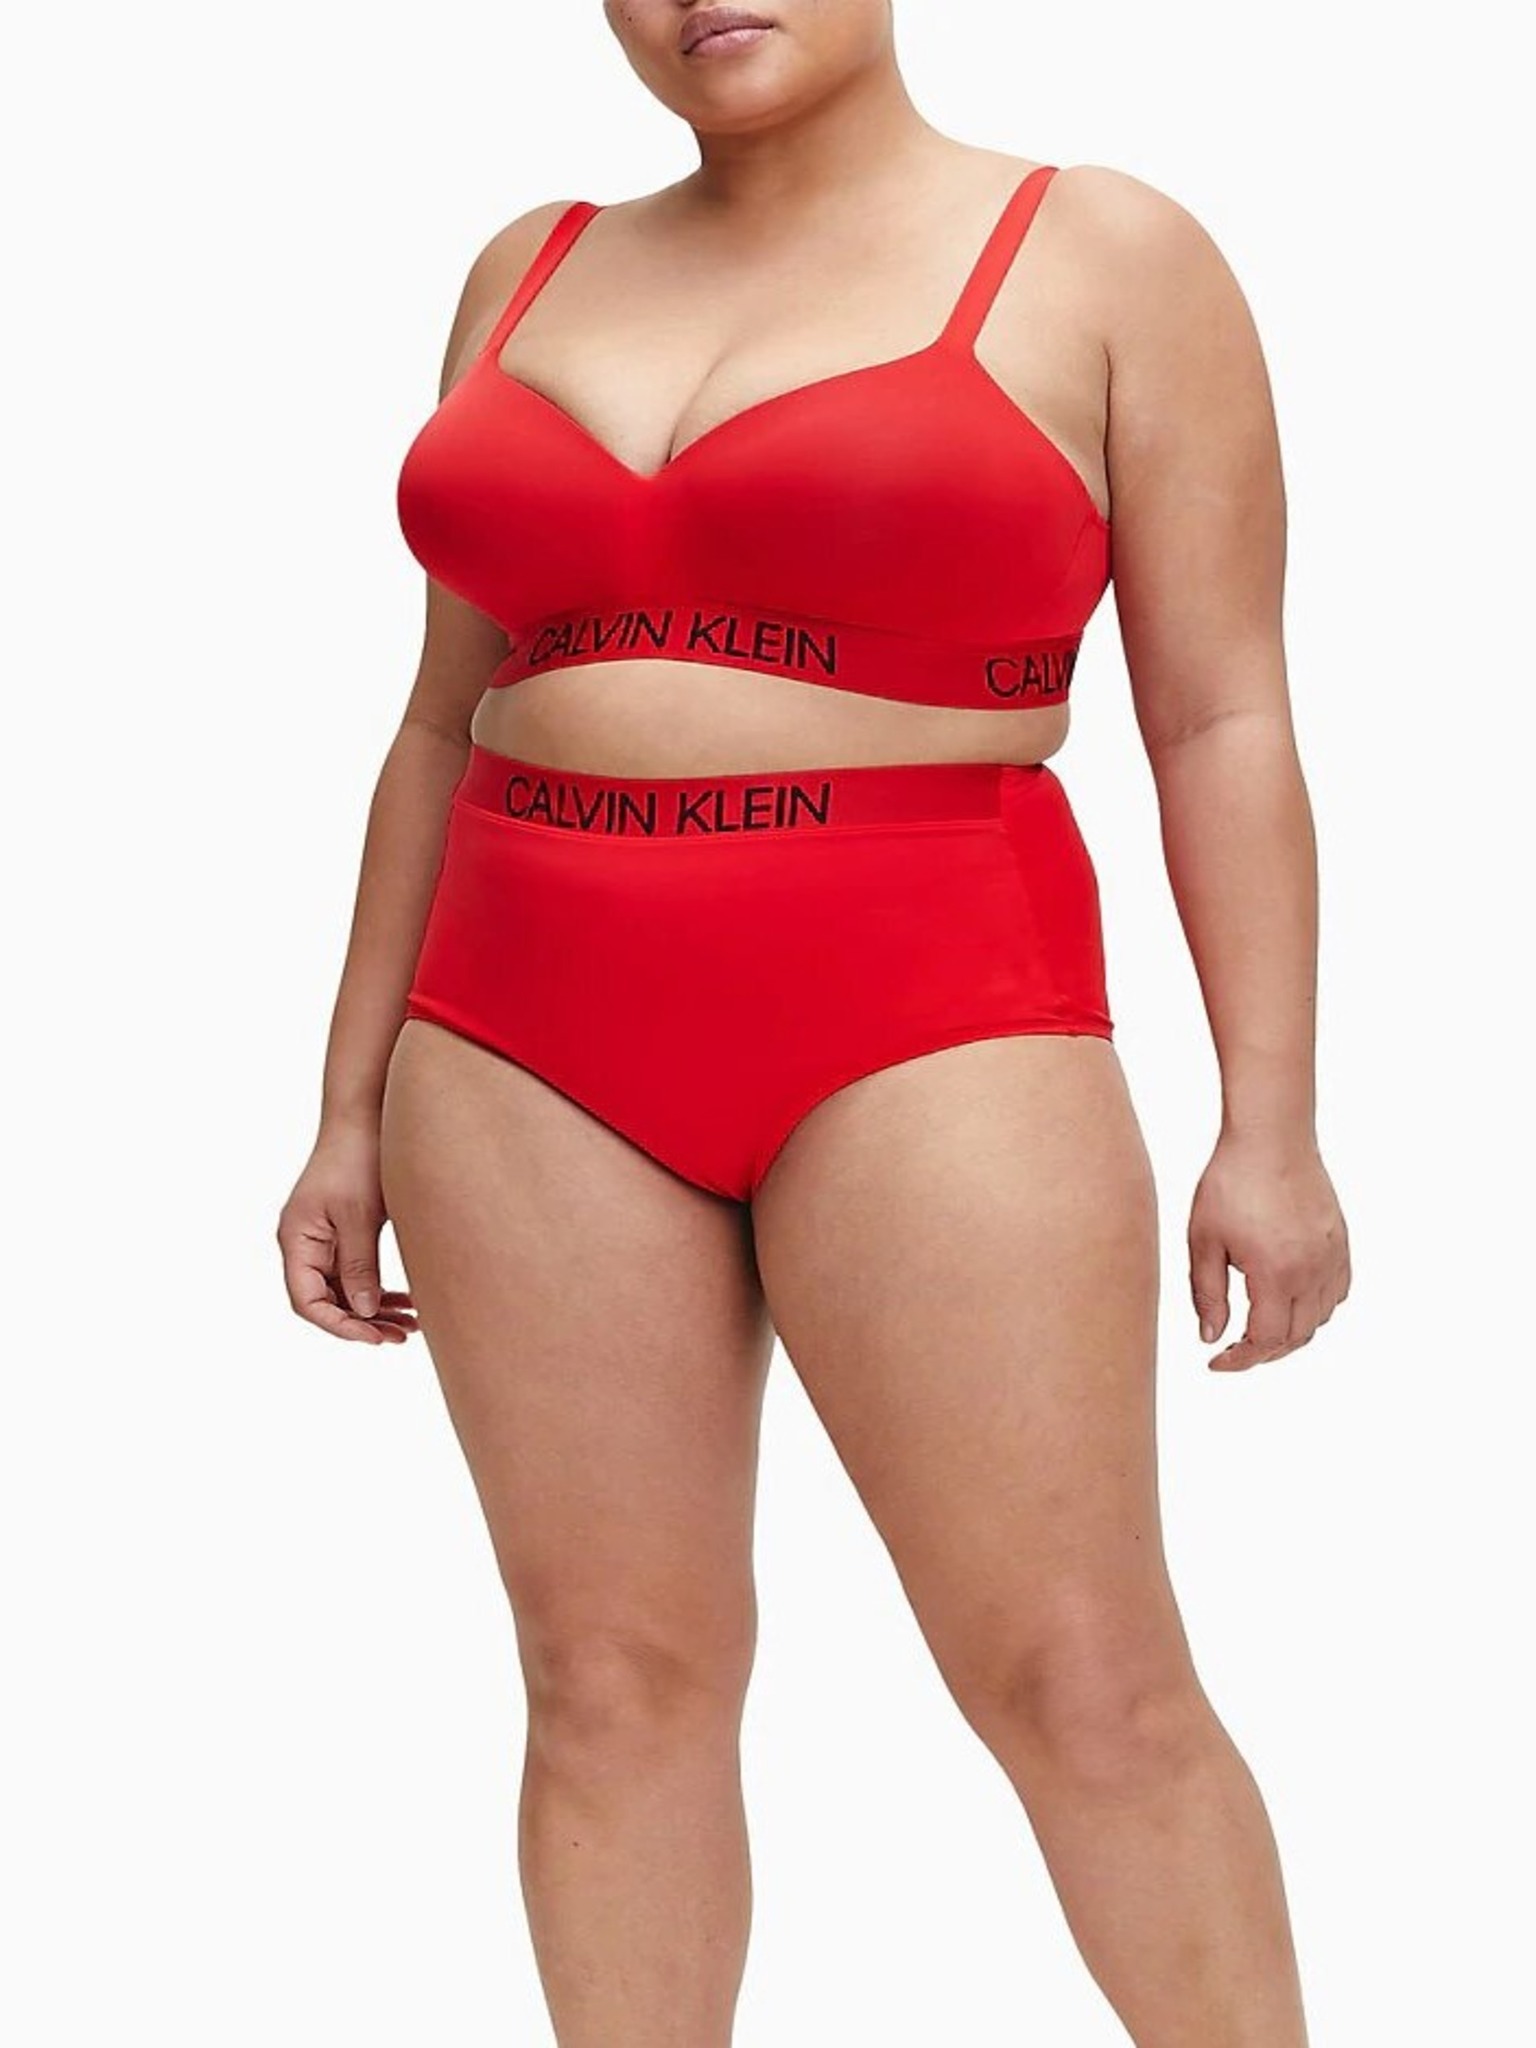 Calvin Klein Women's Red Bras on Sale